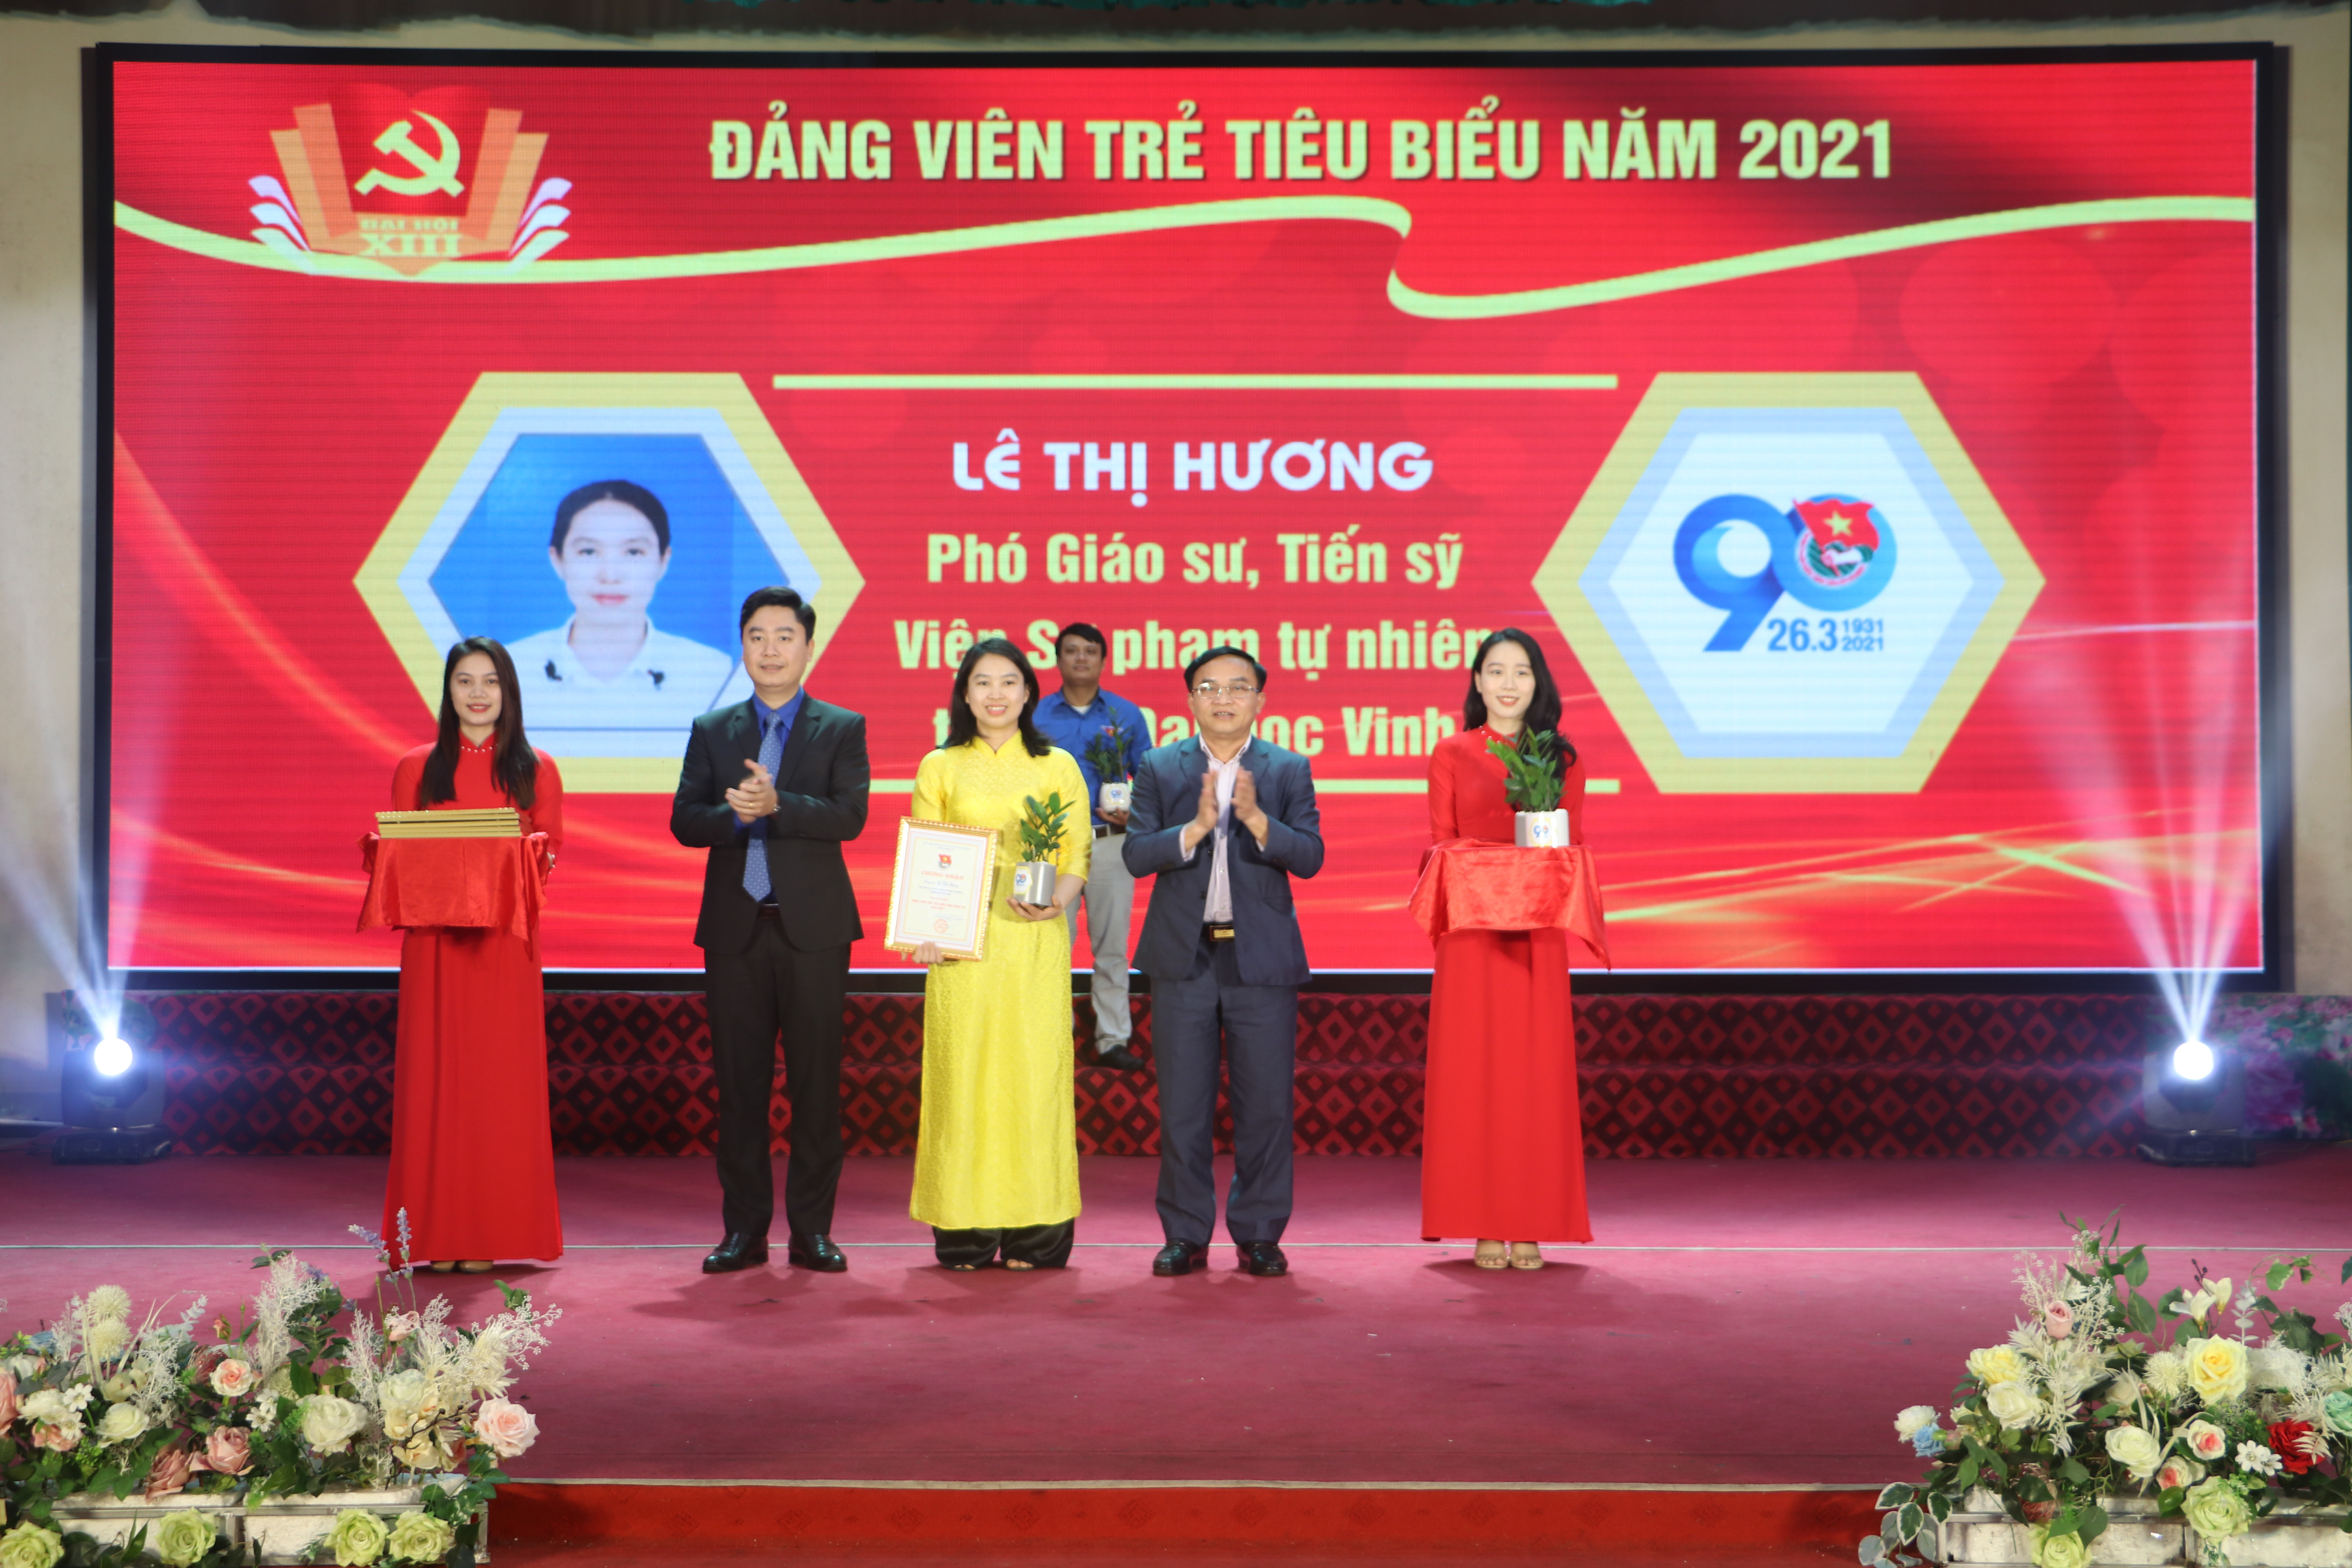 PGS.TS Lê Thị Hương là một trong những Đảng viên trẻ tiêu biểu được Tỉnh đoàn Nghệ An tôn tôn vinh. Ảnh: NVCC